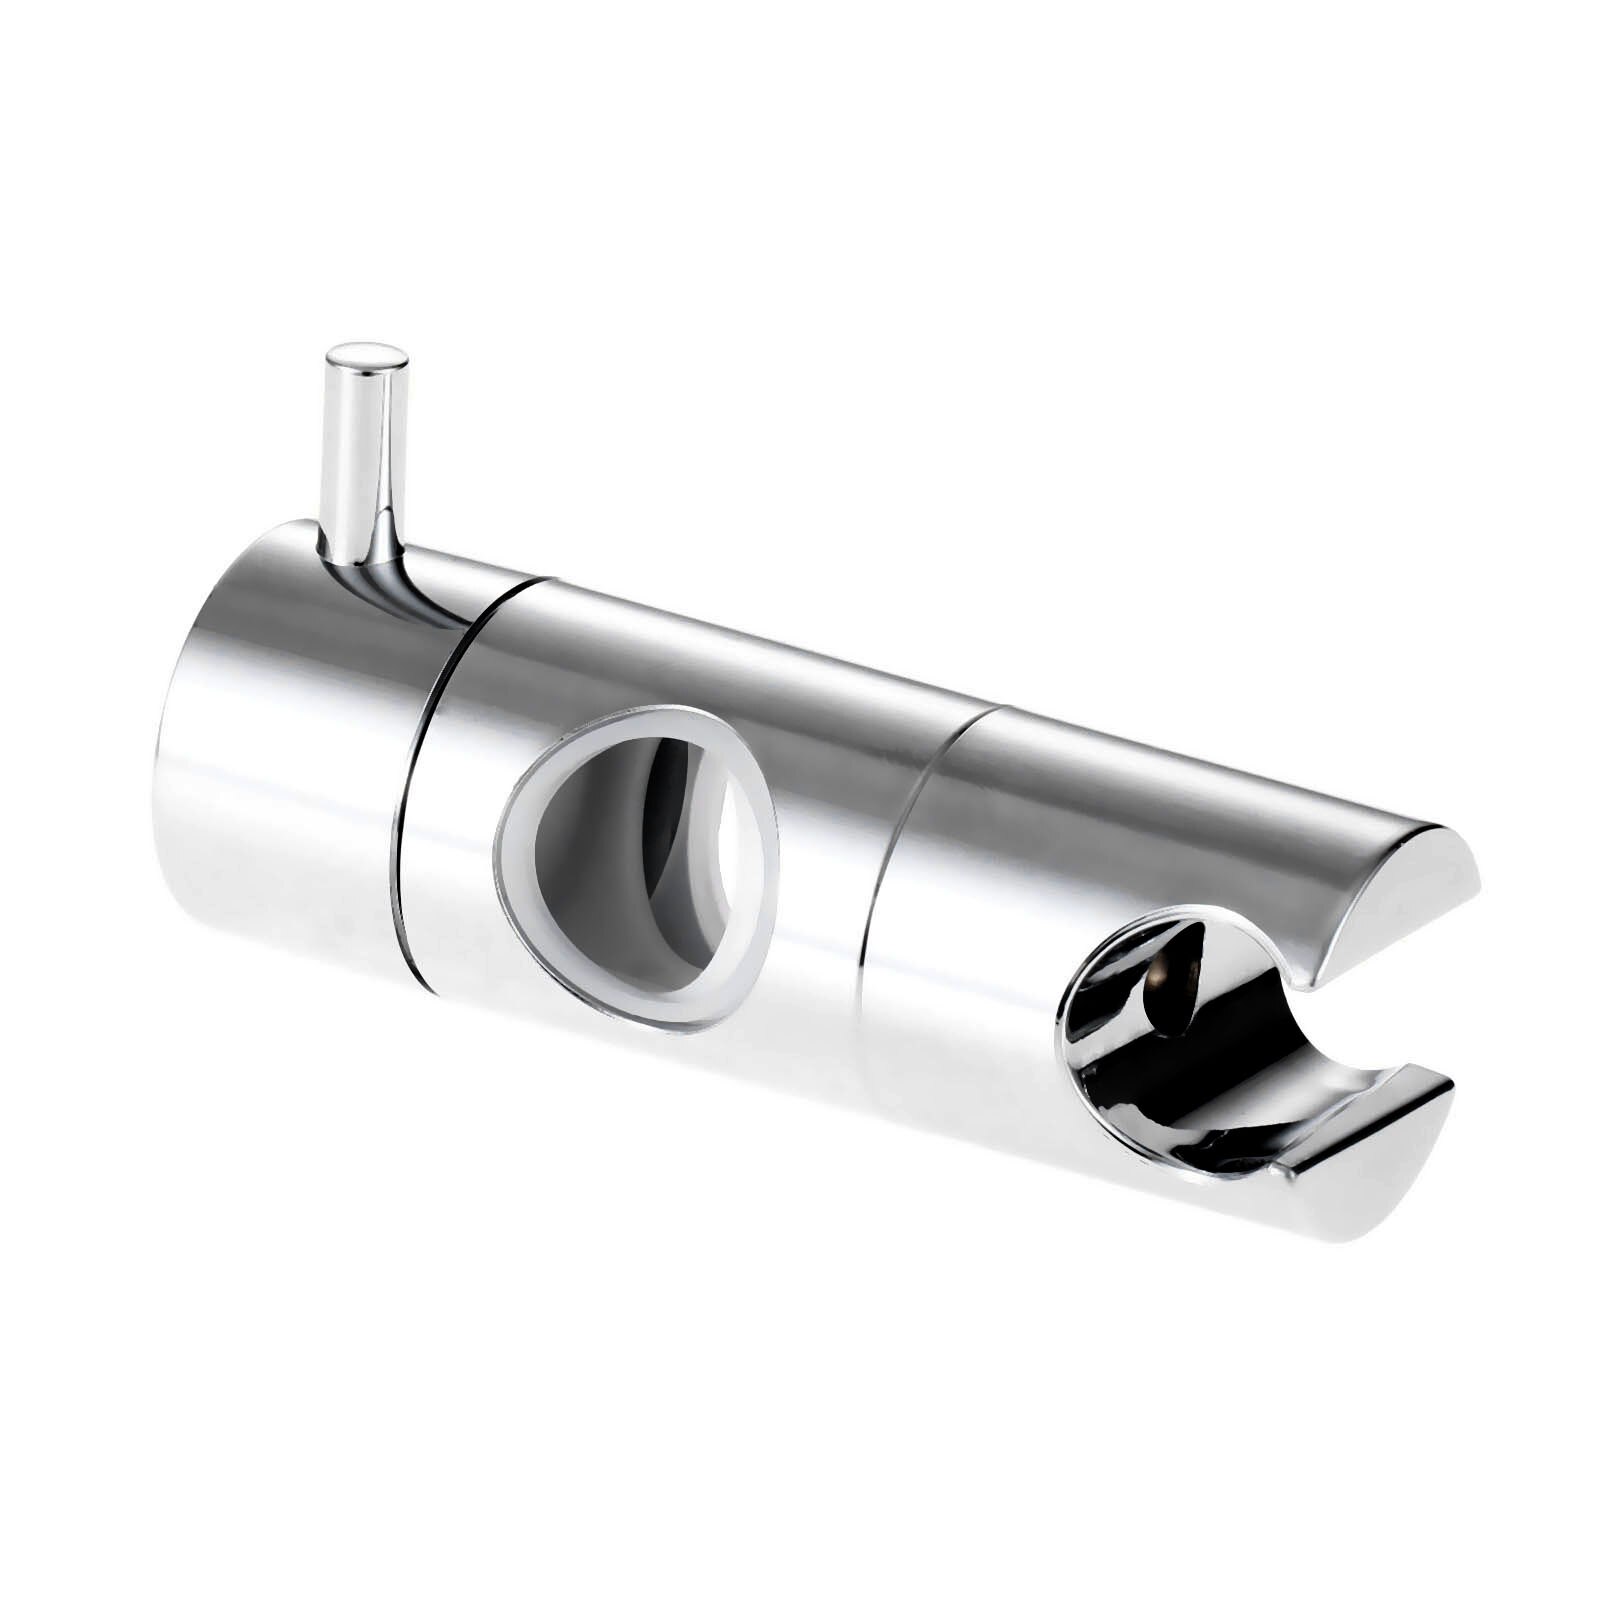 Hand Held Shower Head Holder For 22mm 25mm Tube Shower Rail Bracket Slider Bar Adjustable Sprayer Holder Shower Rod Replacement